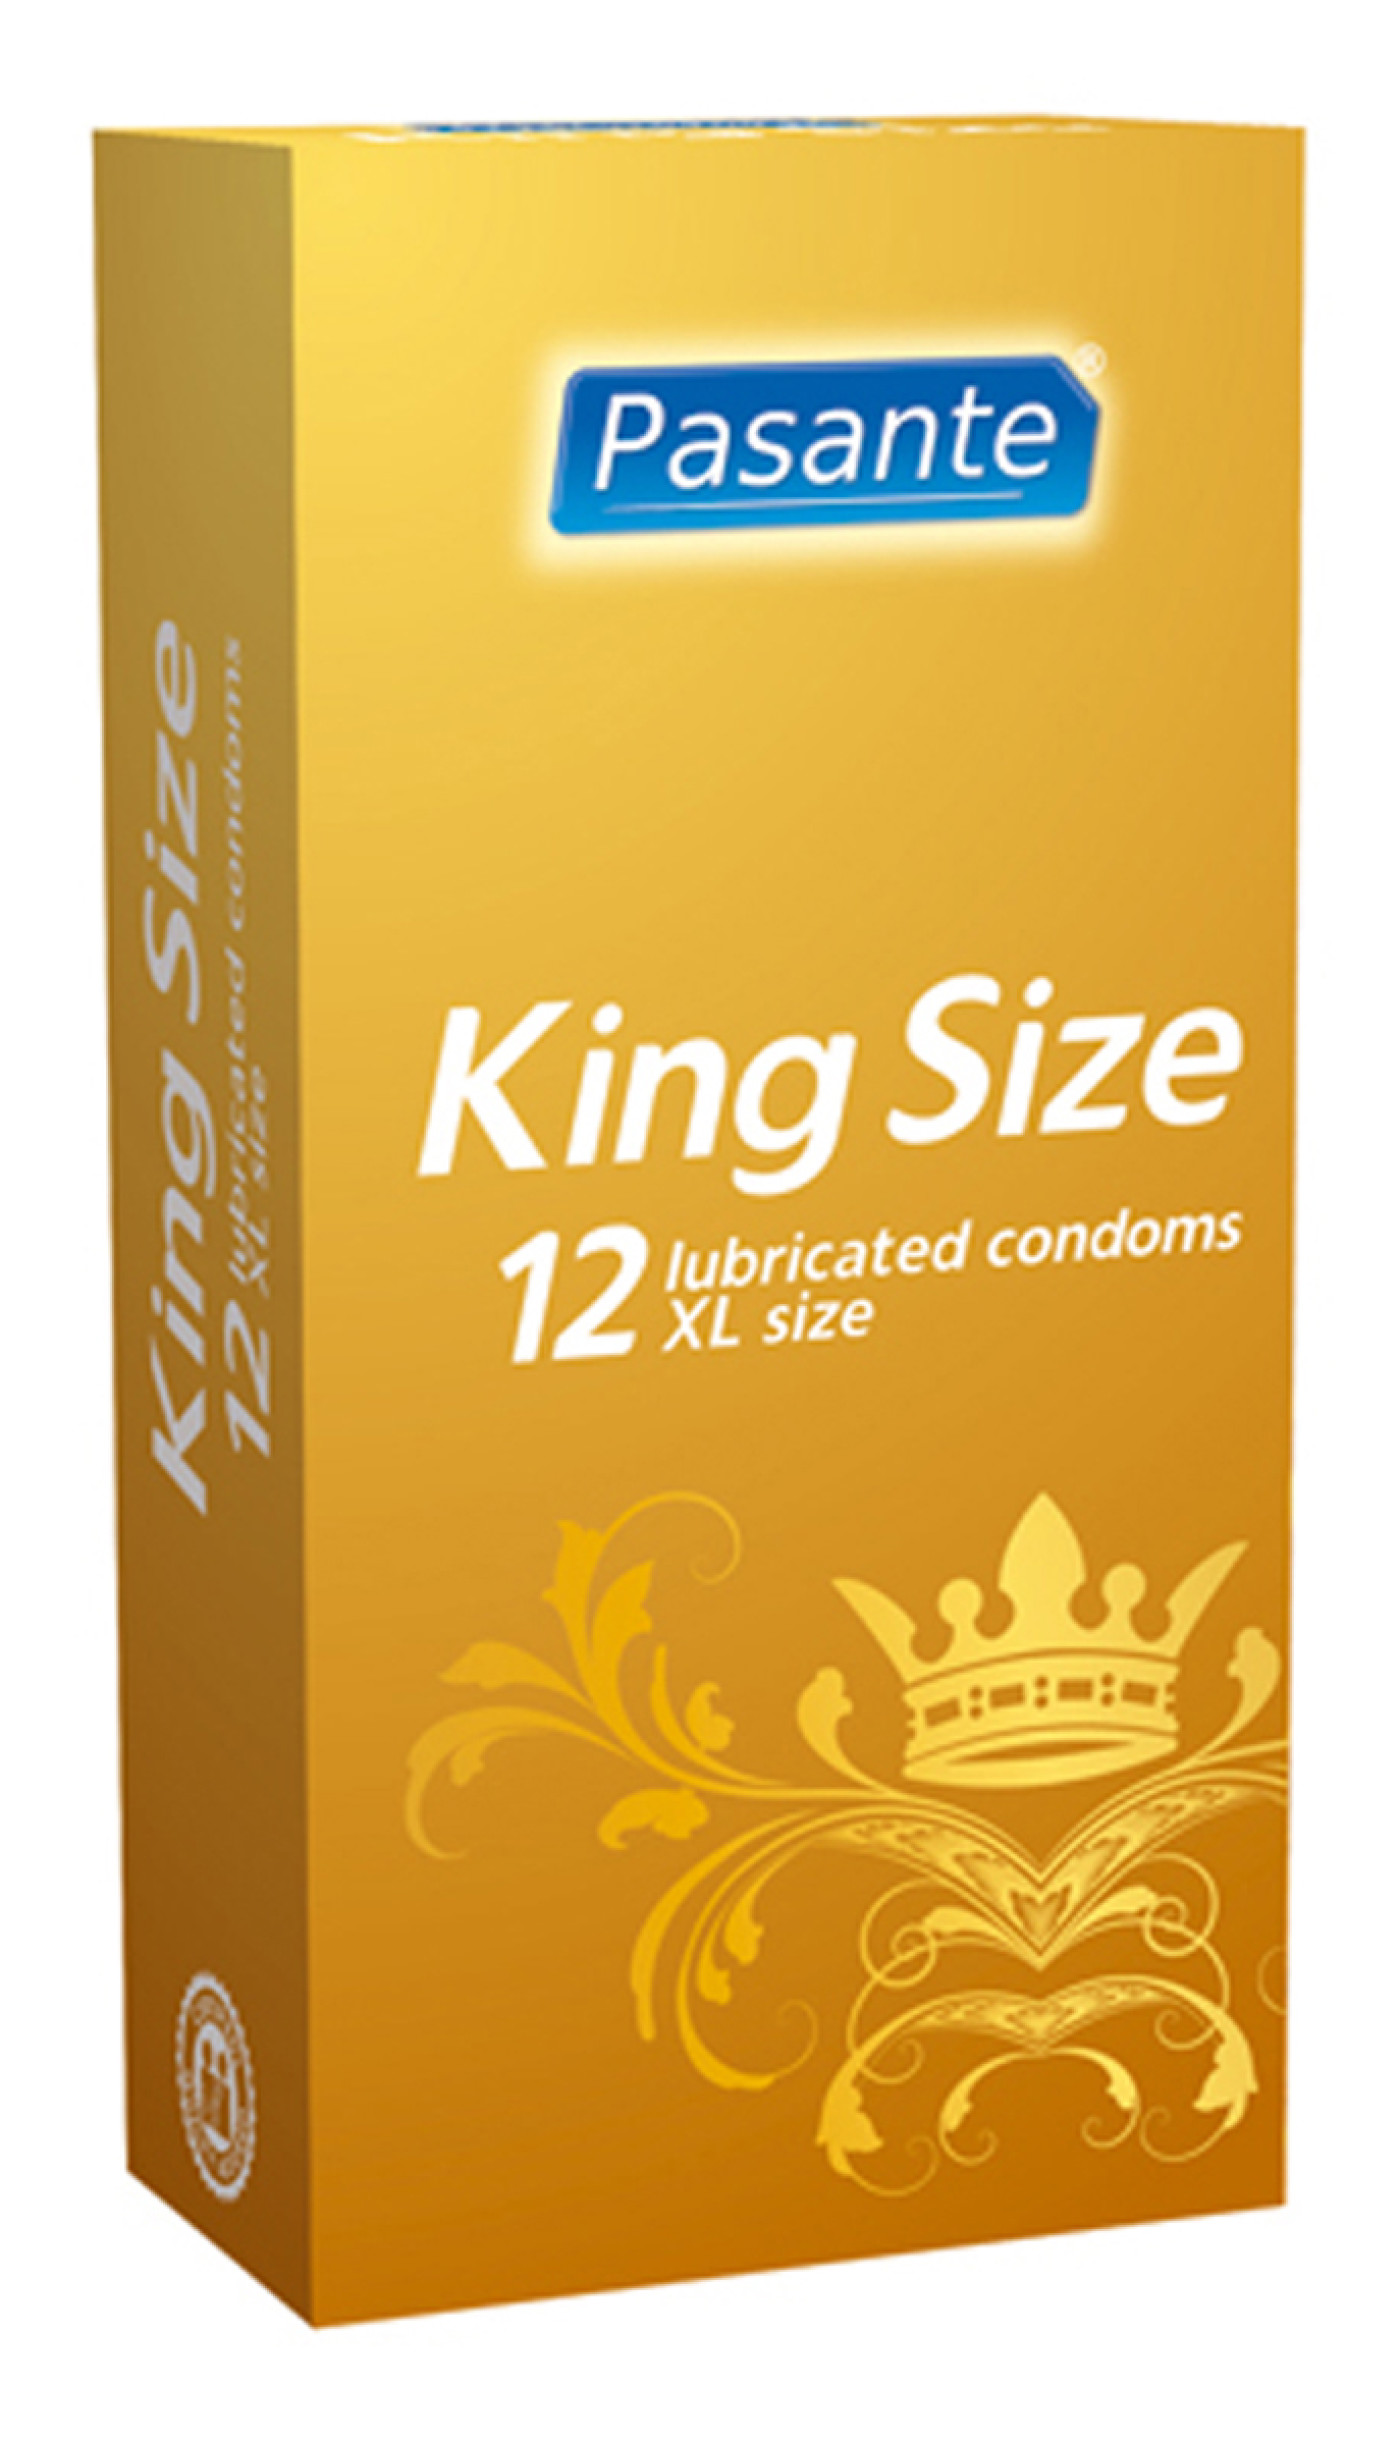 Pasante King Size condoms 12 pcs - Image 1. About Us. 